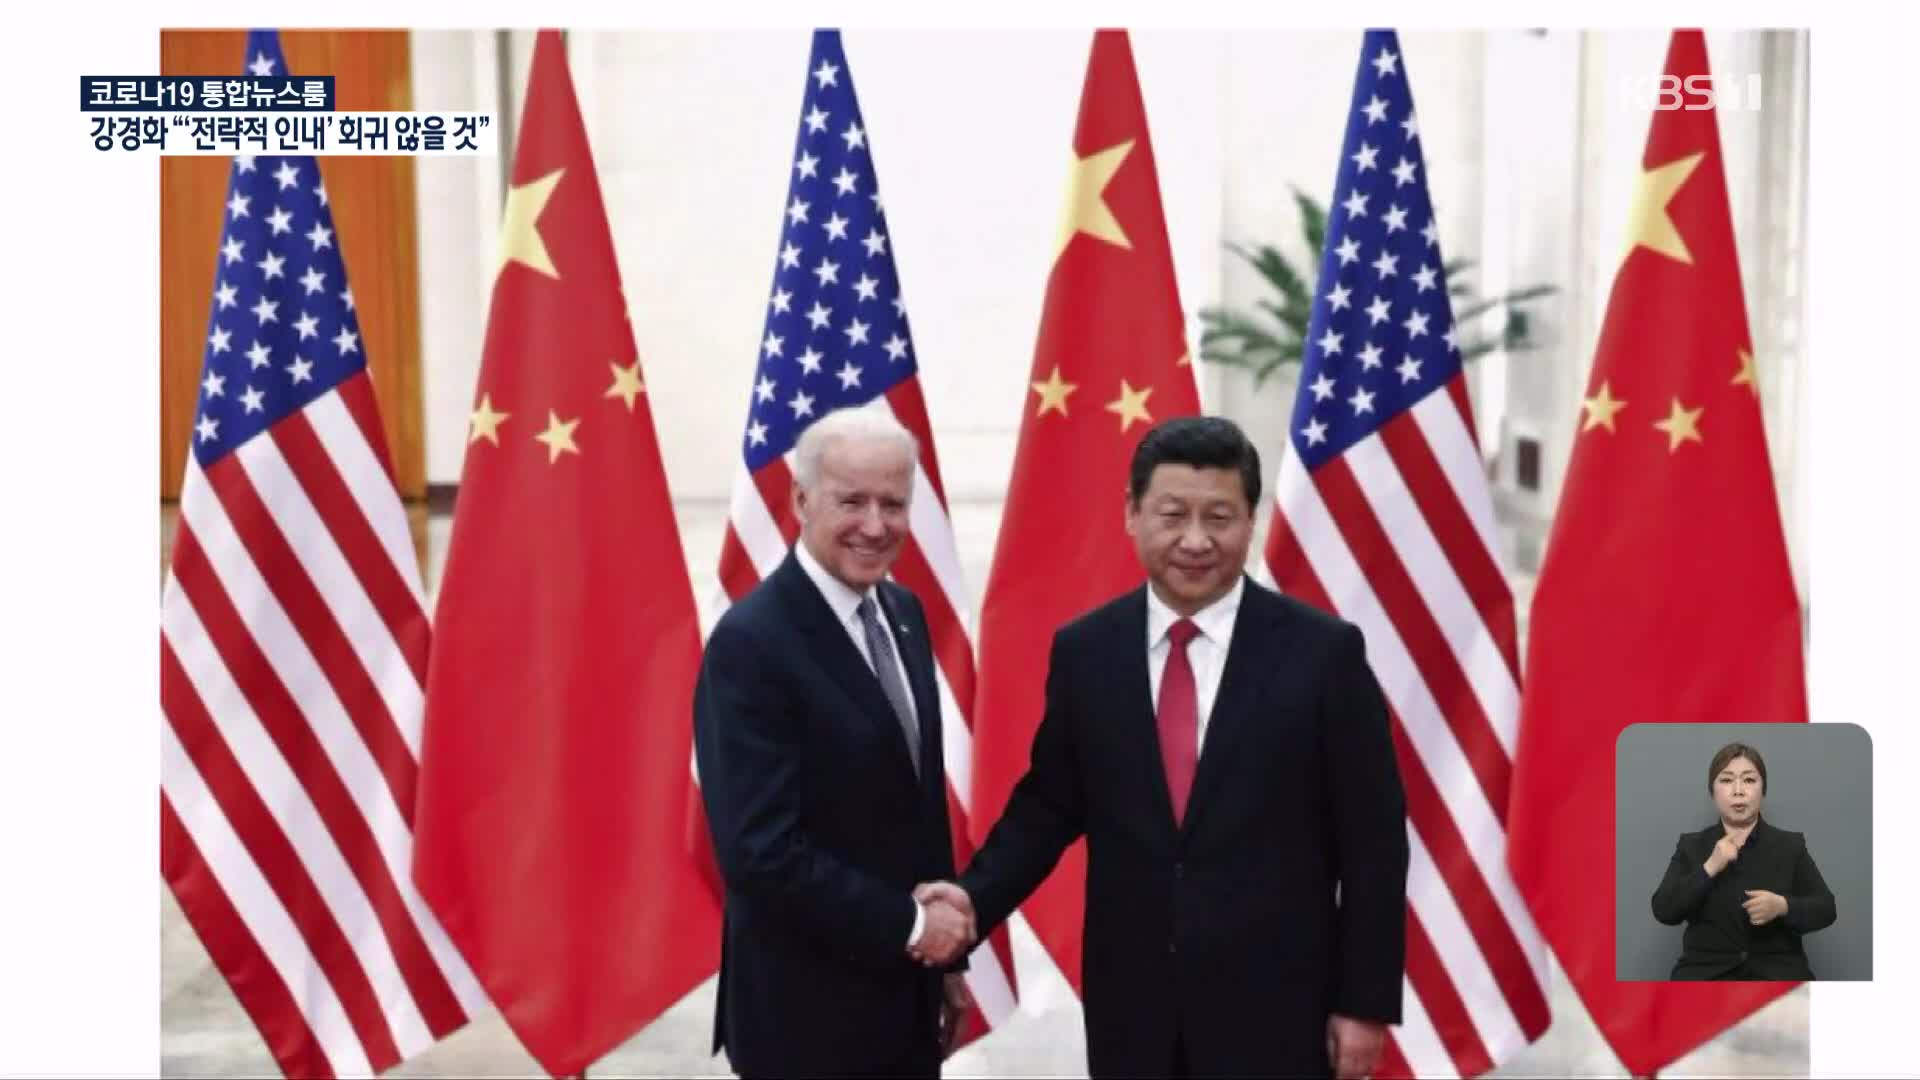 ‘까다로운 맞수’ 만난 중국, 반응은?